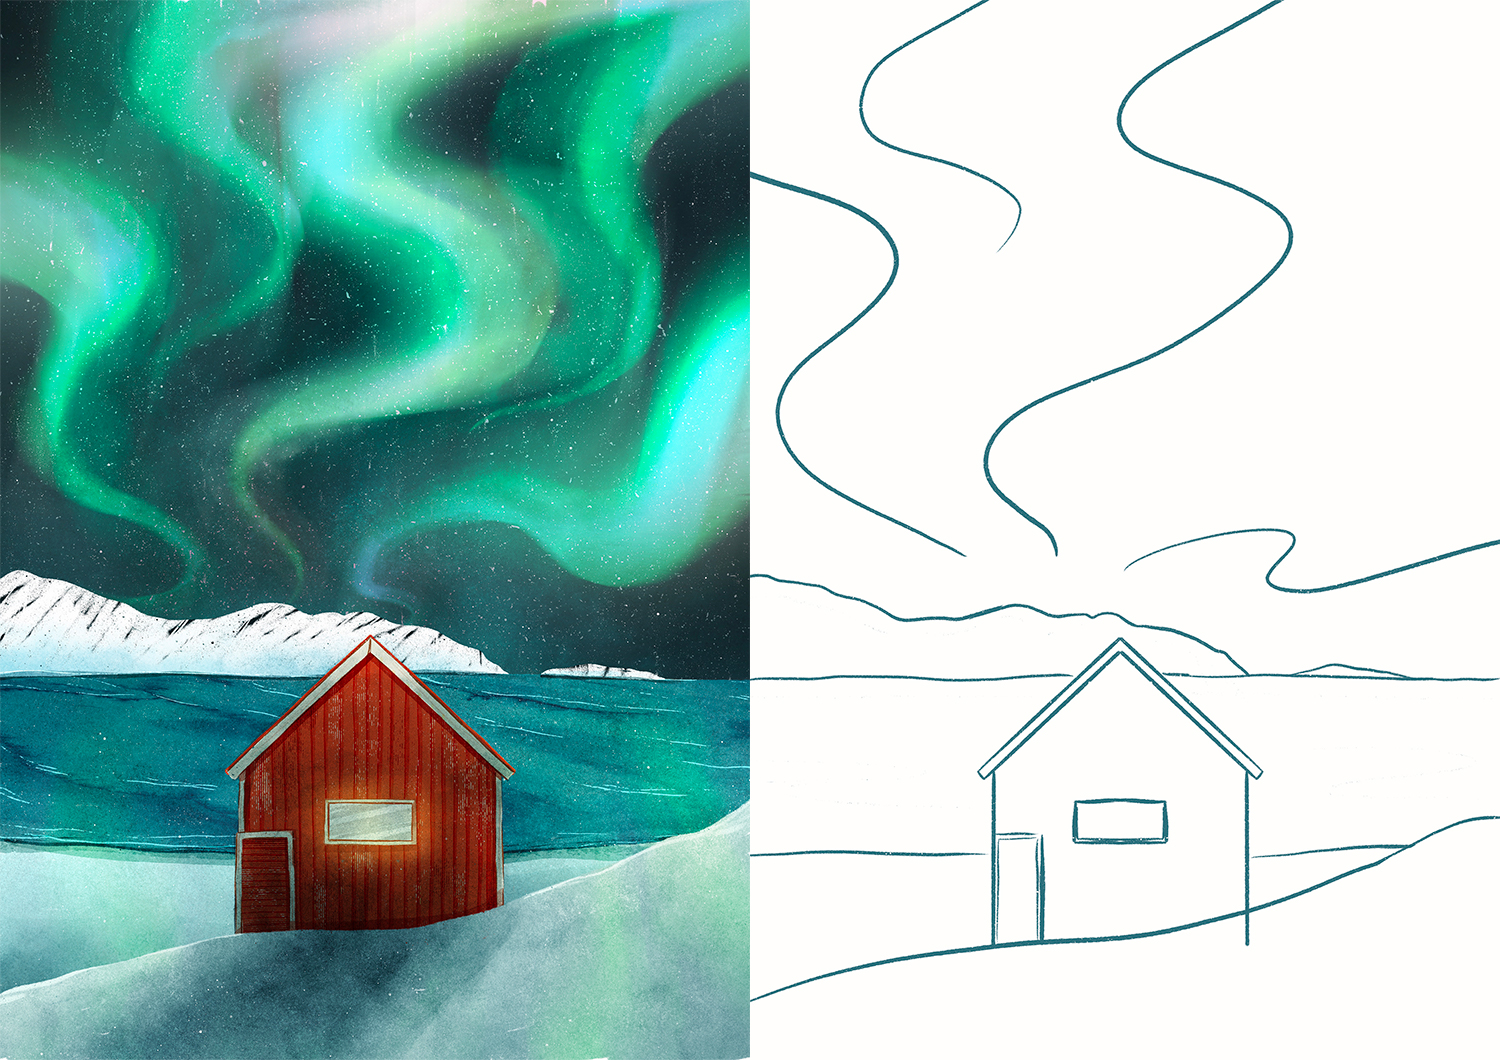 illustration croquis norvège clohey voyage aurore boréale maison rouge